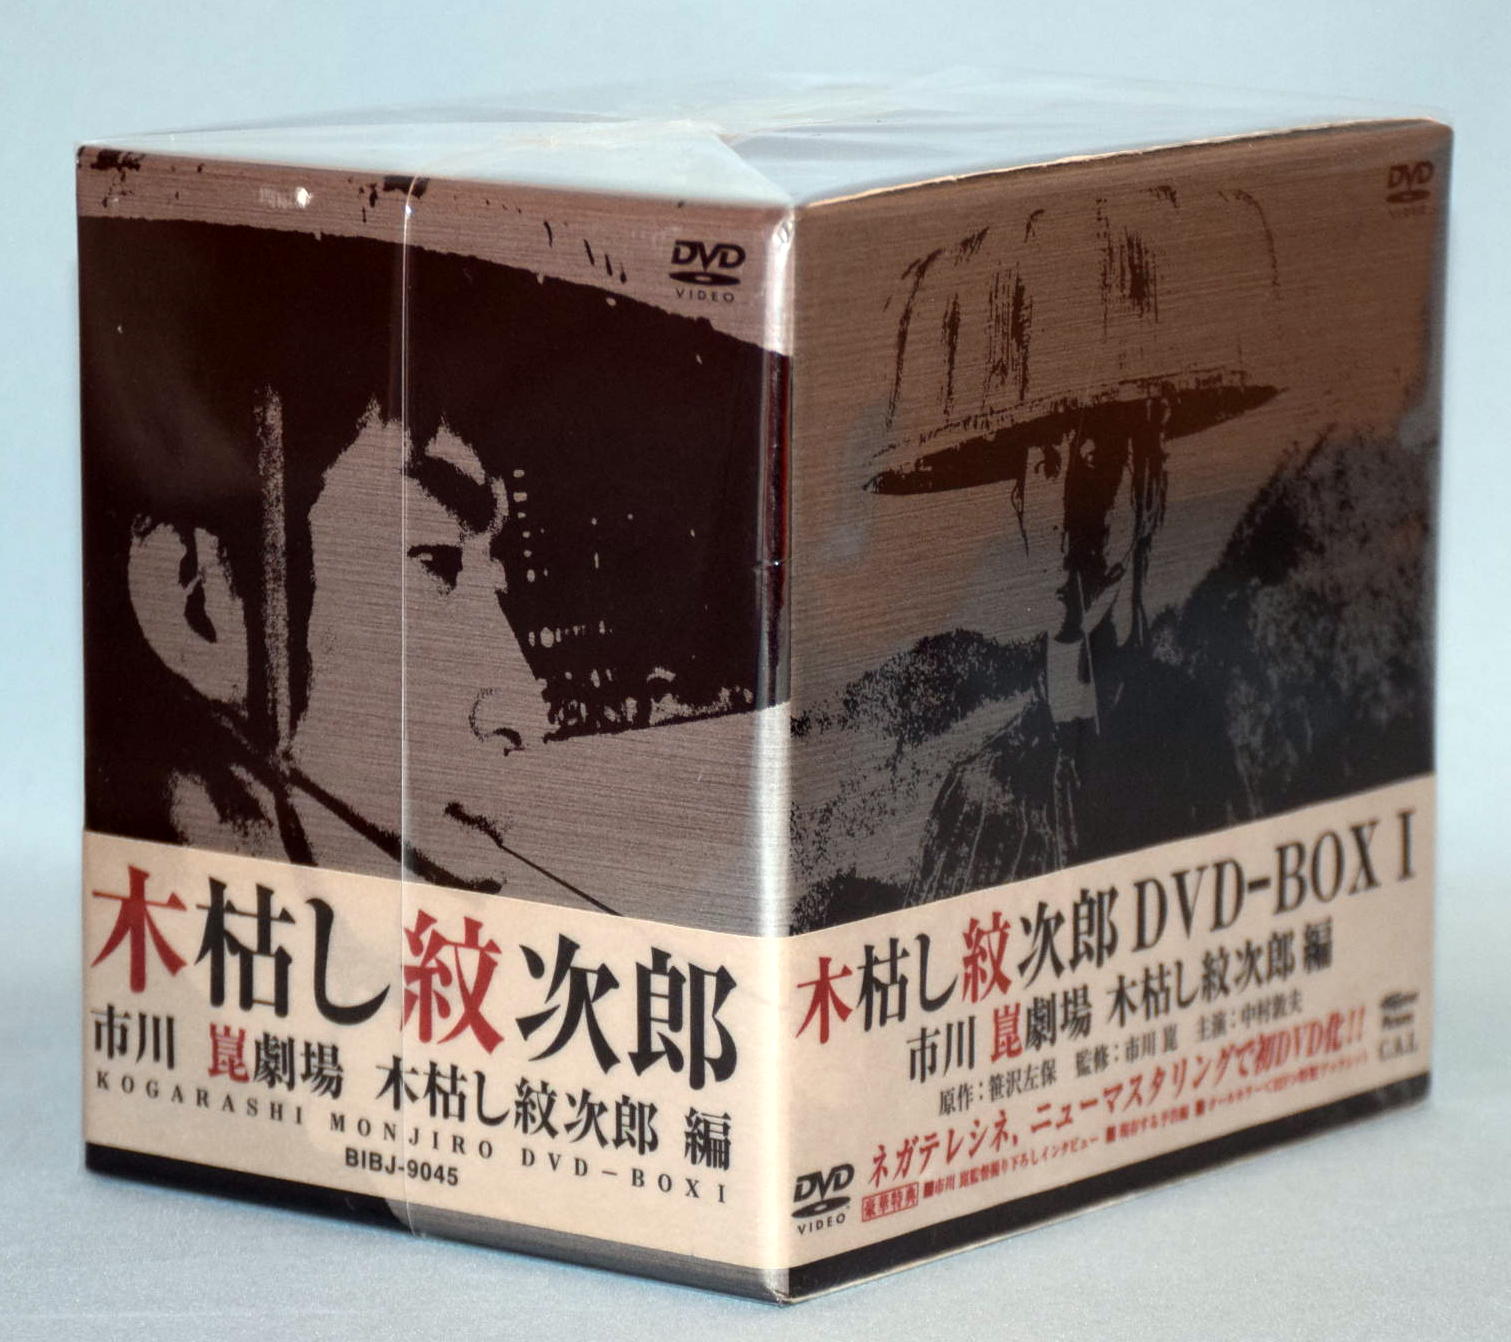 木枯し紋次郎 DVD-BOXⅠとDVD-BOXⅡのセット - ブルーレイ